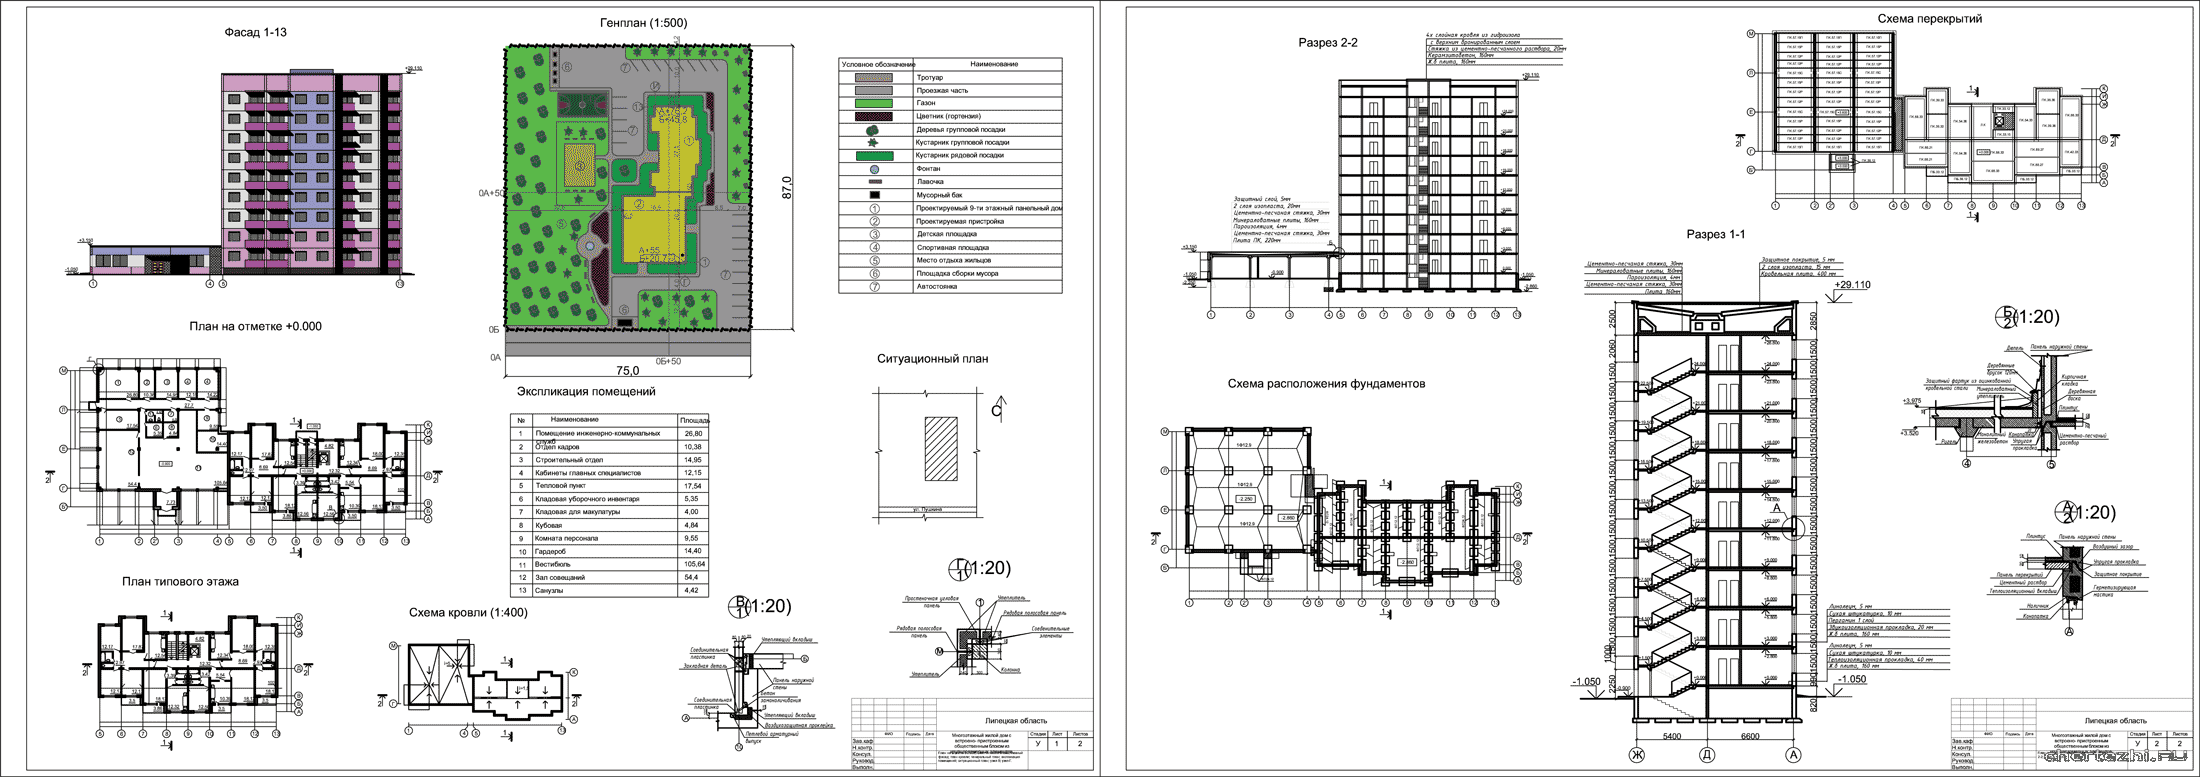 Курсовой проект - 9-ти этажный панельный дом с пристройкой г. Липецк